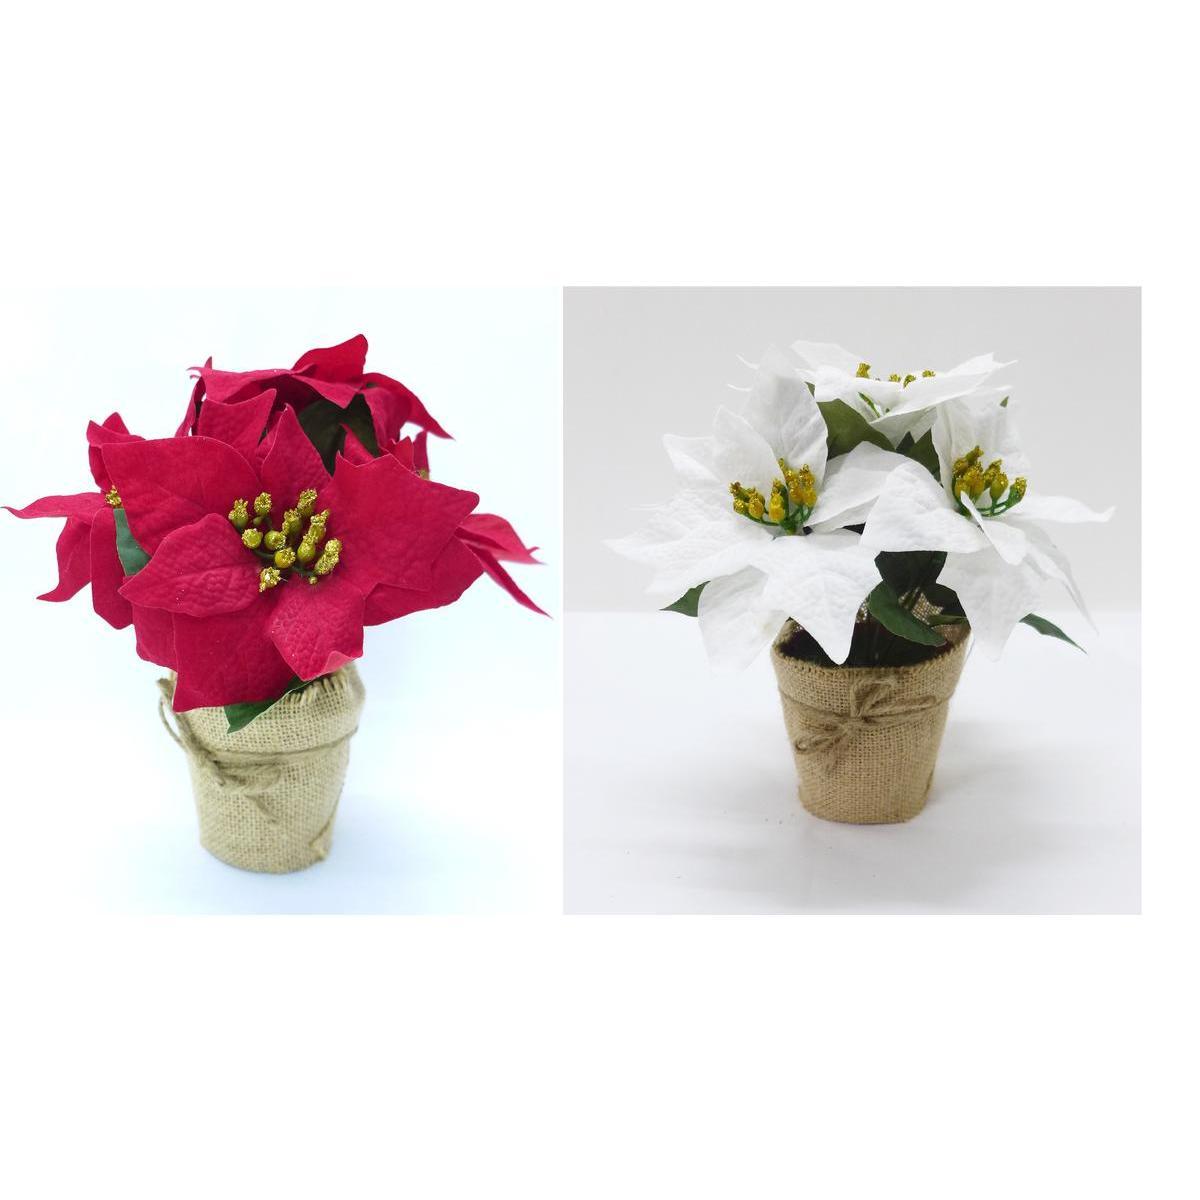 Poinsettia artificielle en pot - Différents modèles